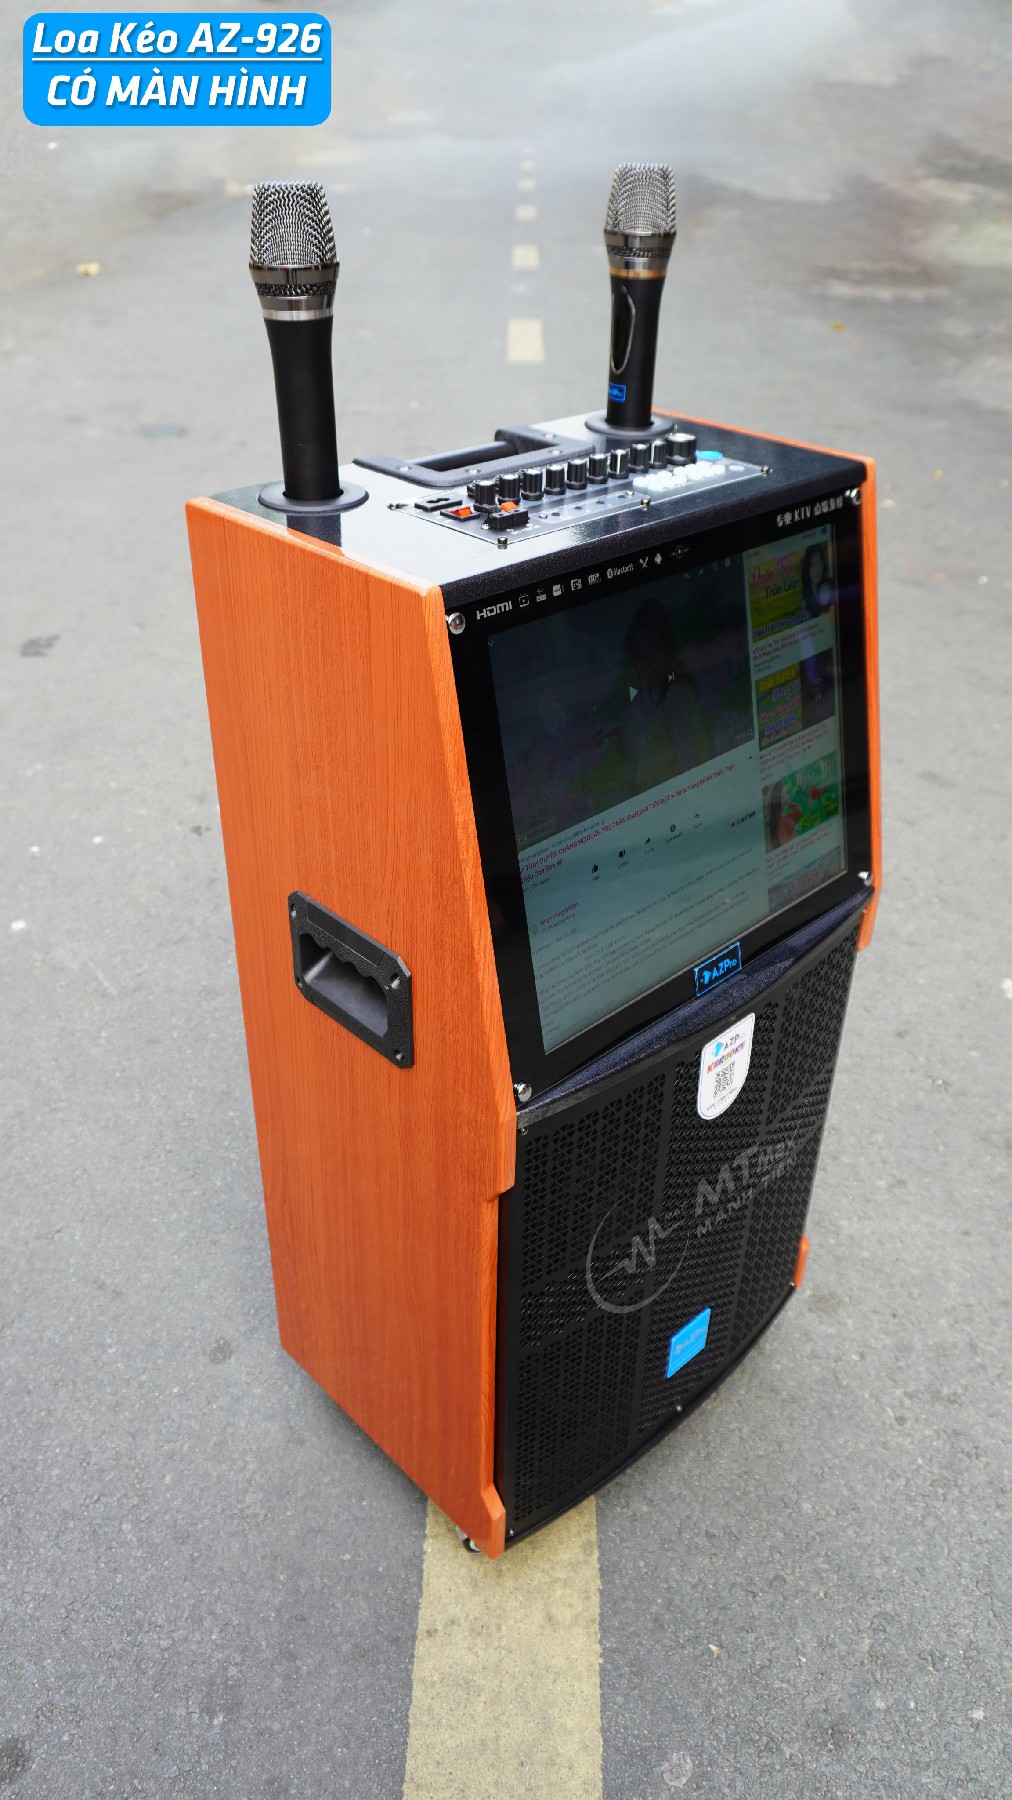 Loa kéo thông minh AZPro AZ-926 - Loa kéo di động 3 tấc, 3 đường tiếng, màn hình cảm ứng 17 inch - Sử dụng Android - Kết nối Wifi, Bluetooth, HDMI, USB, AUX, TF card - Chức năng livestream, hiệu ứng khán giả - Kèm 2 micro không dây UHF - Hàng chính hãng